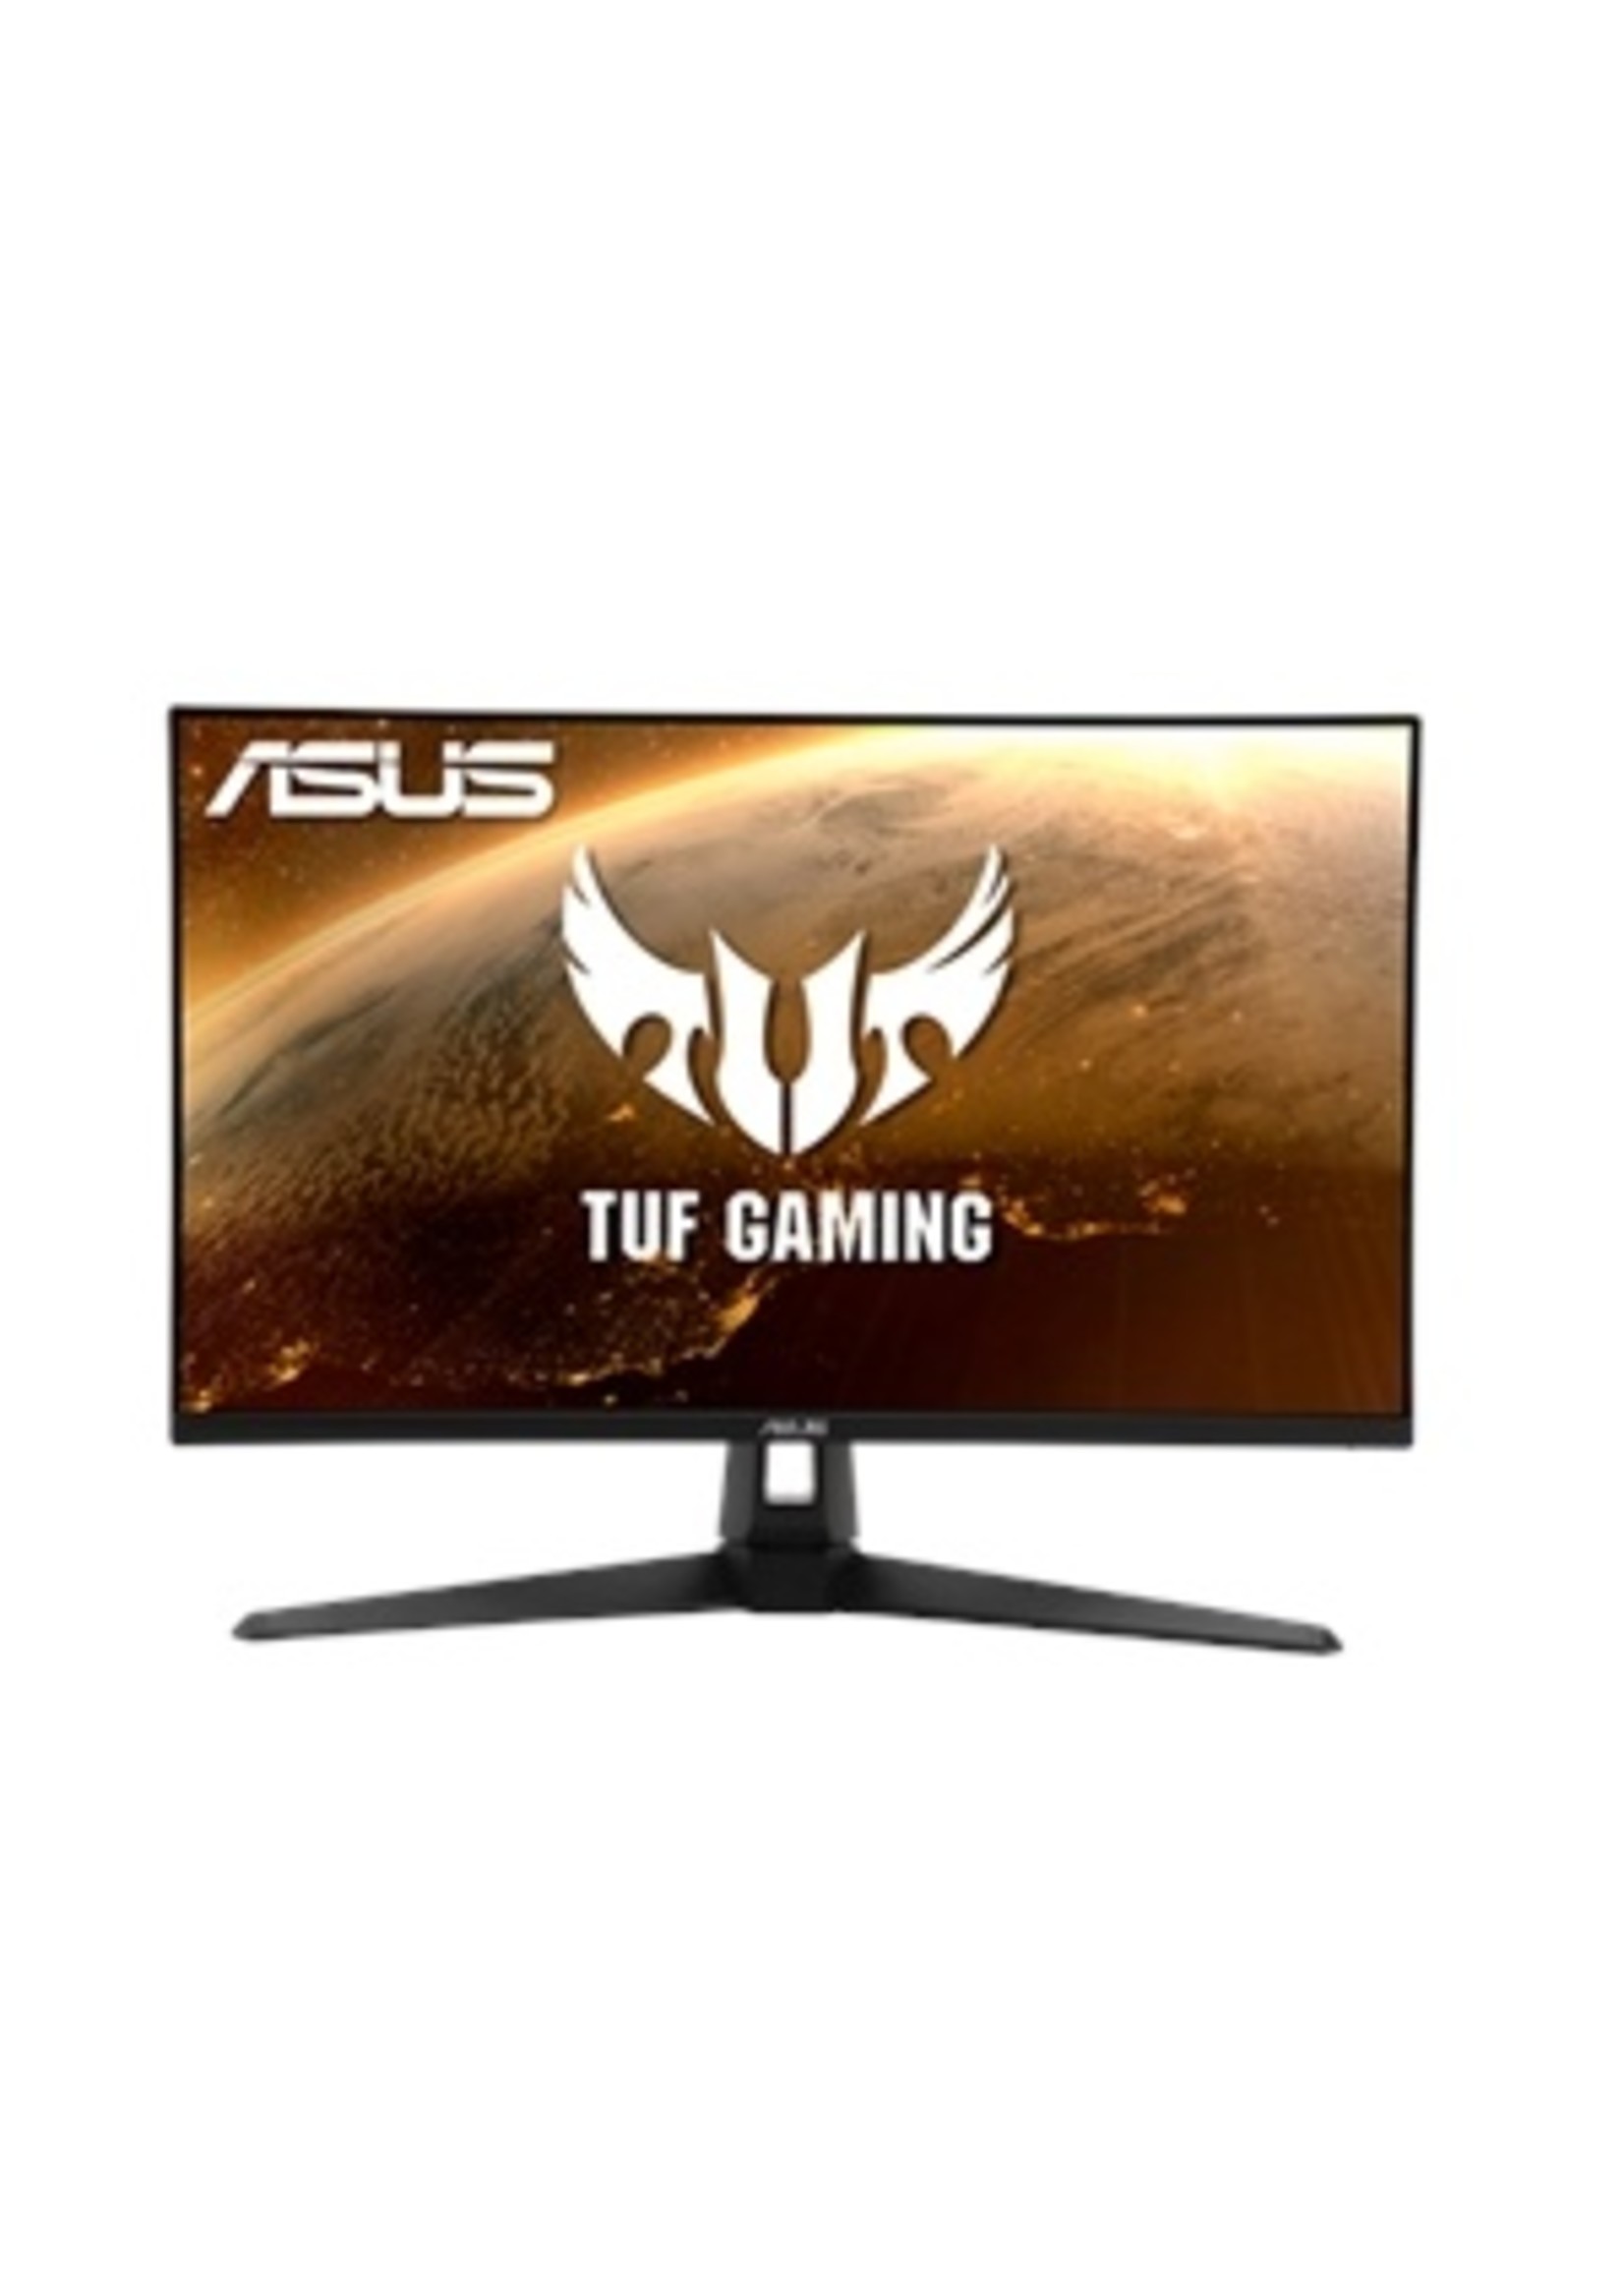 ASUS ASUS TUF Gaming 27" 1440P HDR Monitor (VG27AQ1A)